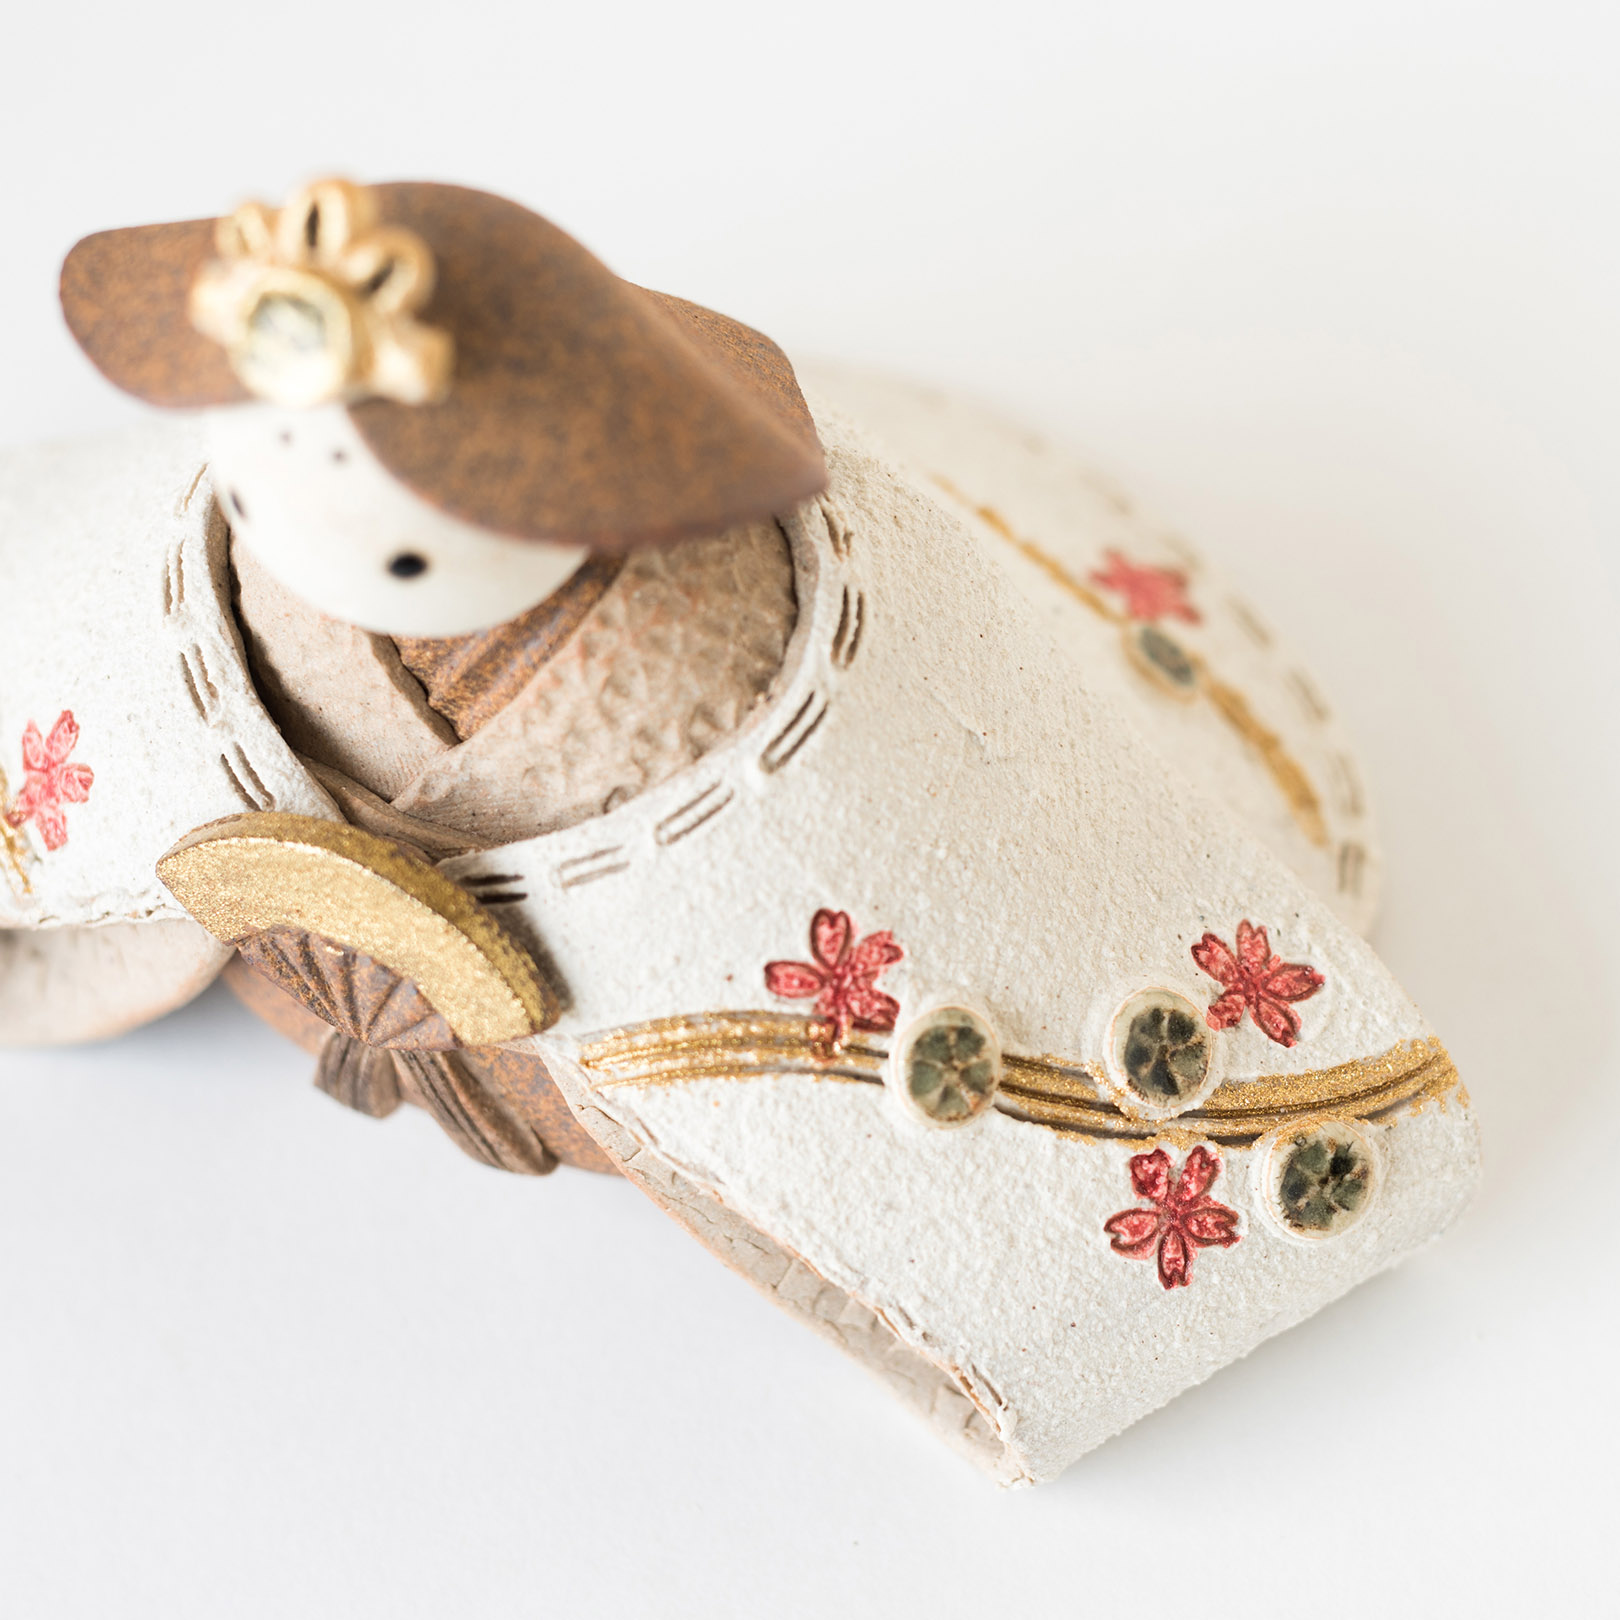 信楽焼の陶器の雛人形の細部の装飾の細やかさを伝える画像